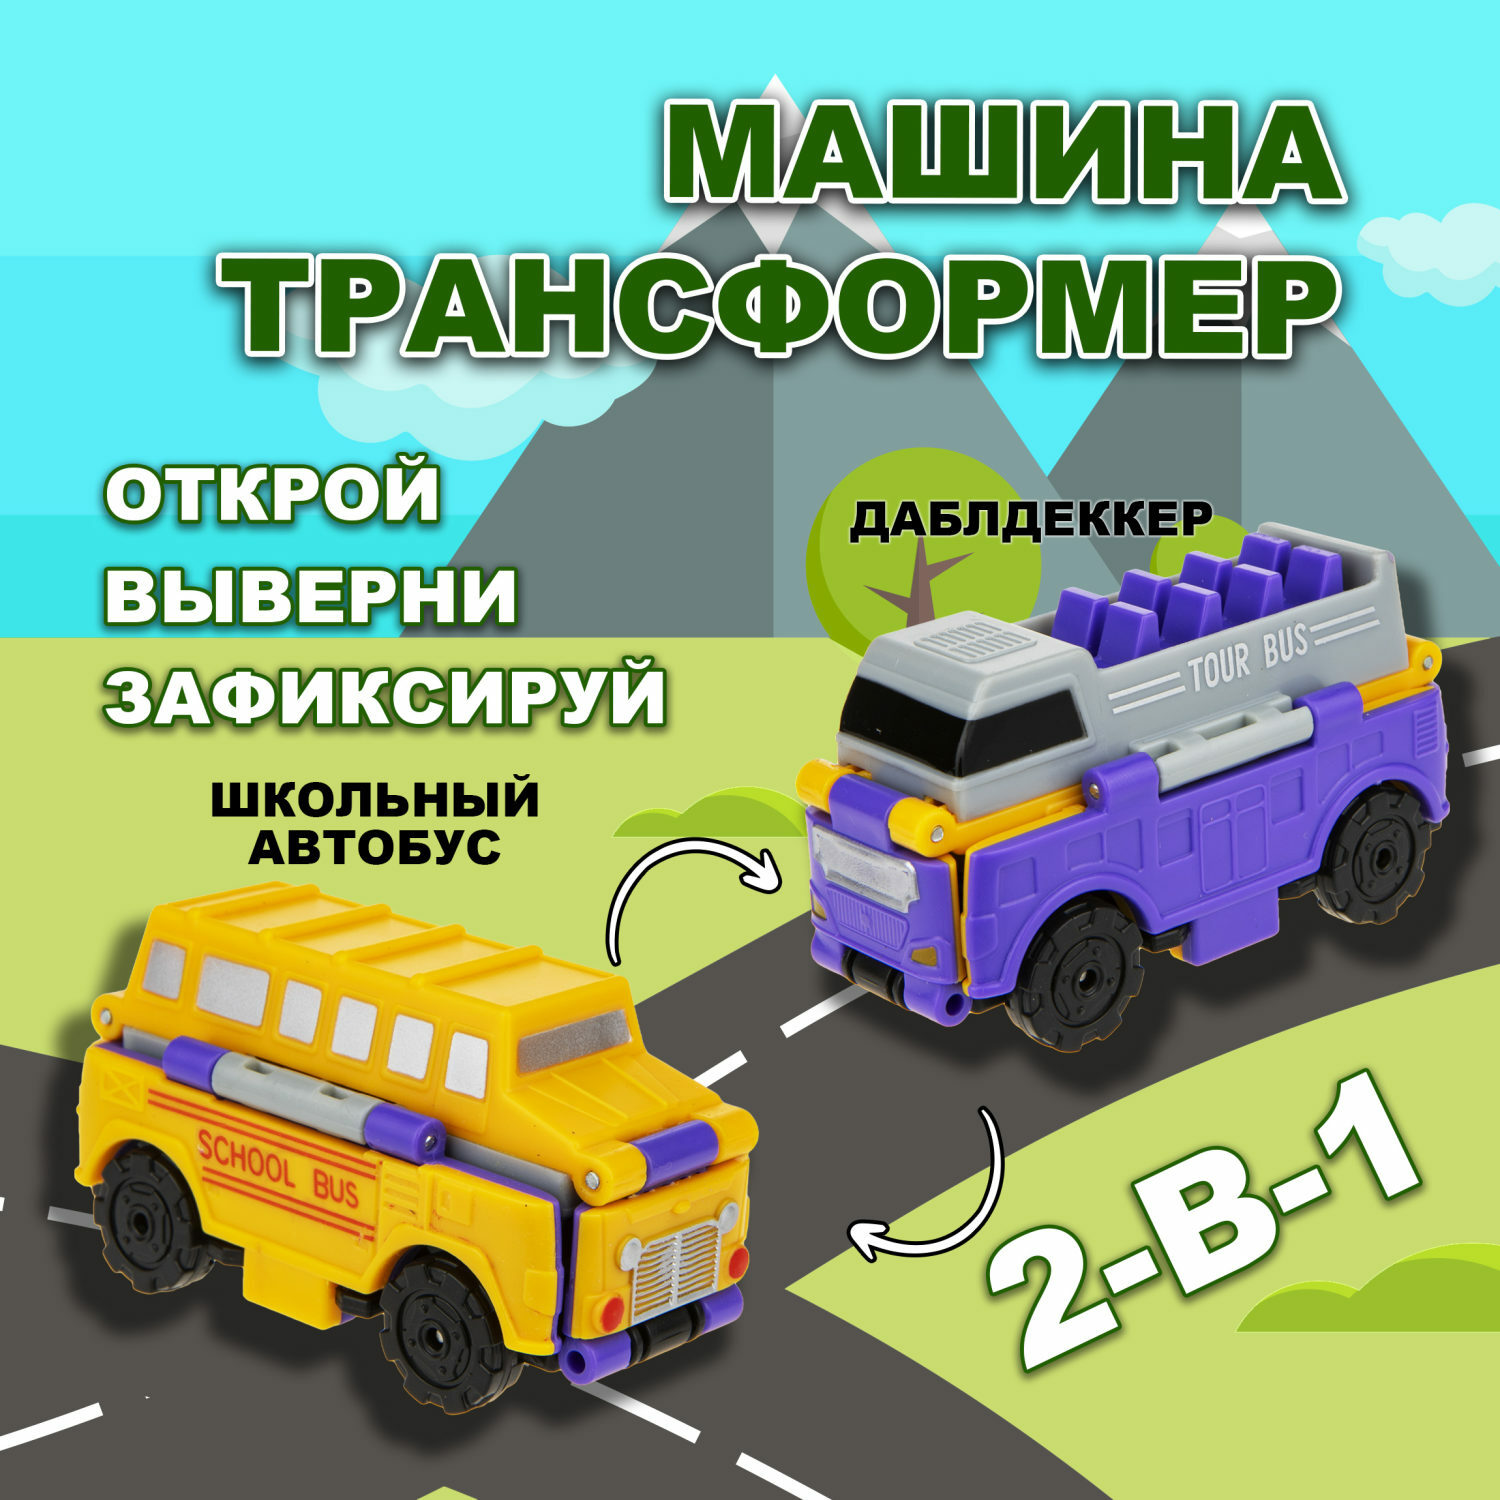 Машинка игрушечная Transcar Double Автовывернушка Даблдэккер – Школьный автобус Т18282 - фото 1